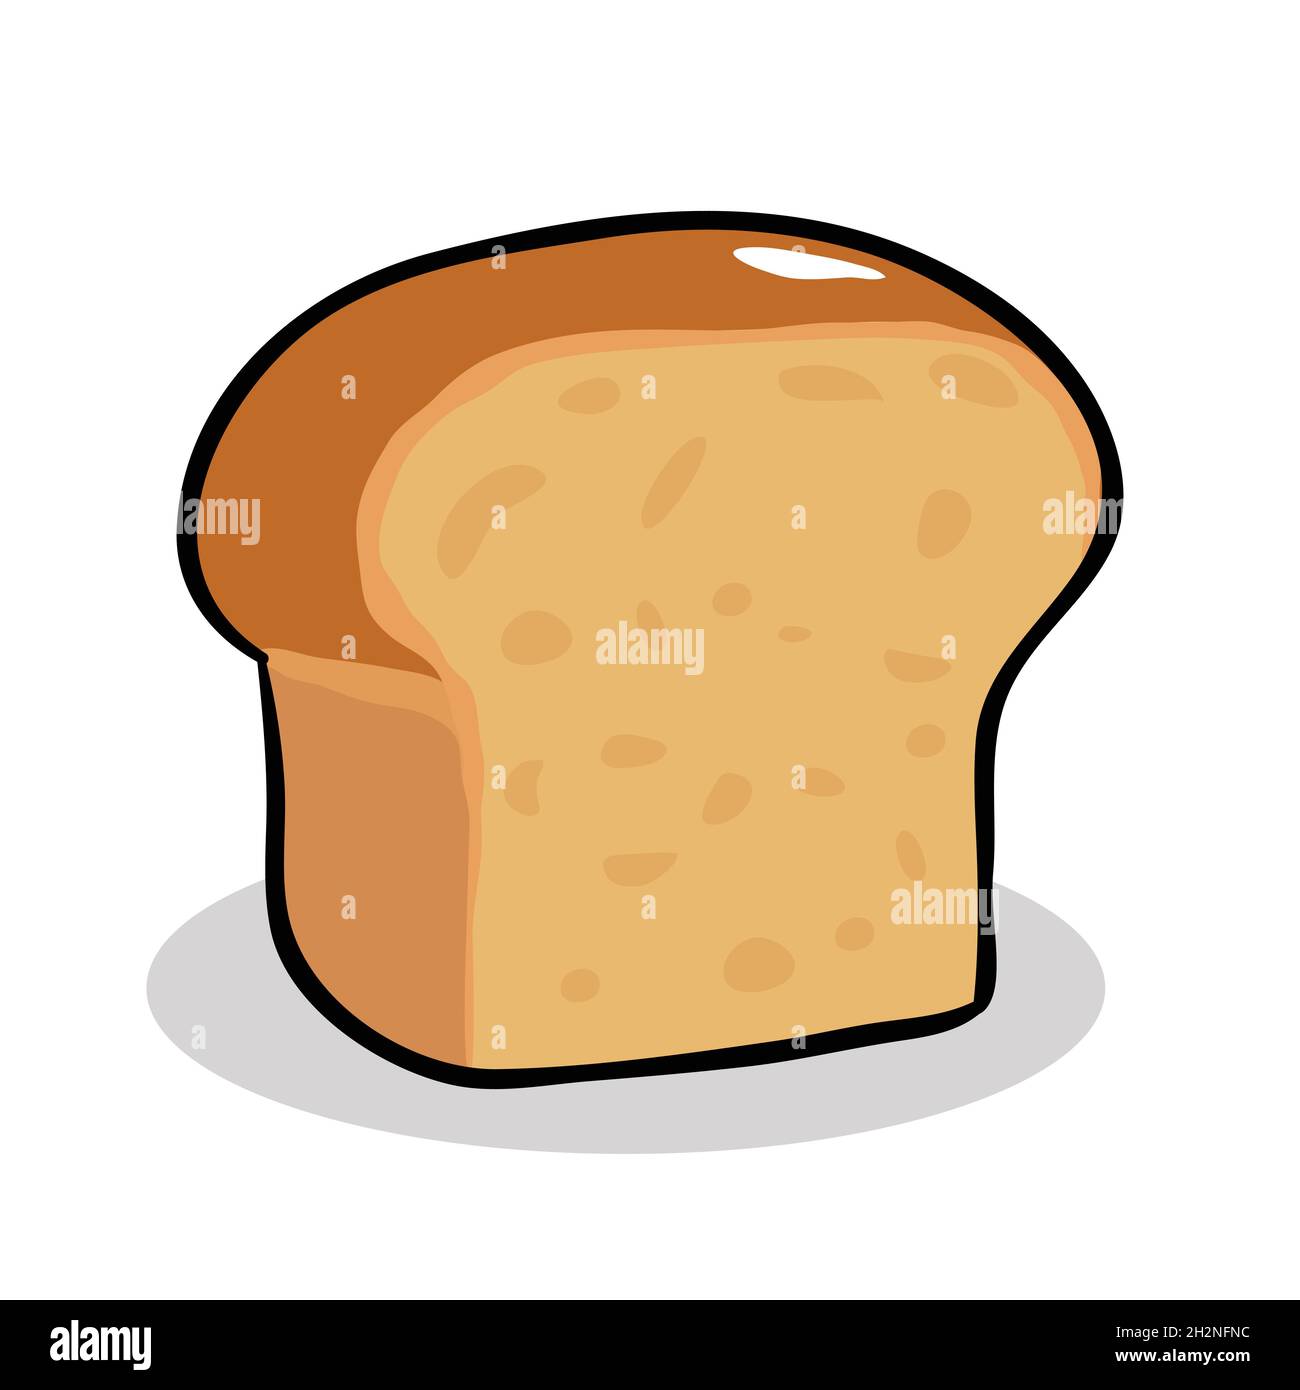 Bread sliced clip art vector illustration Stock Vector